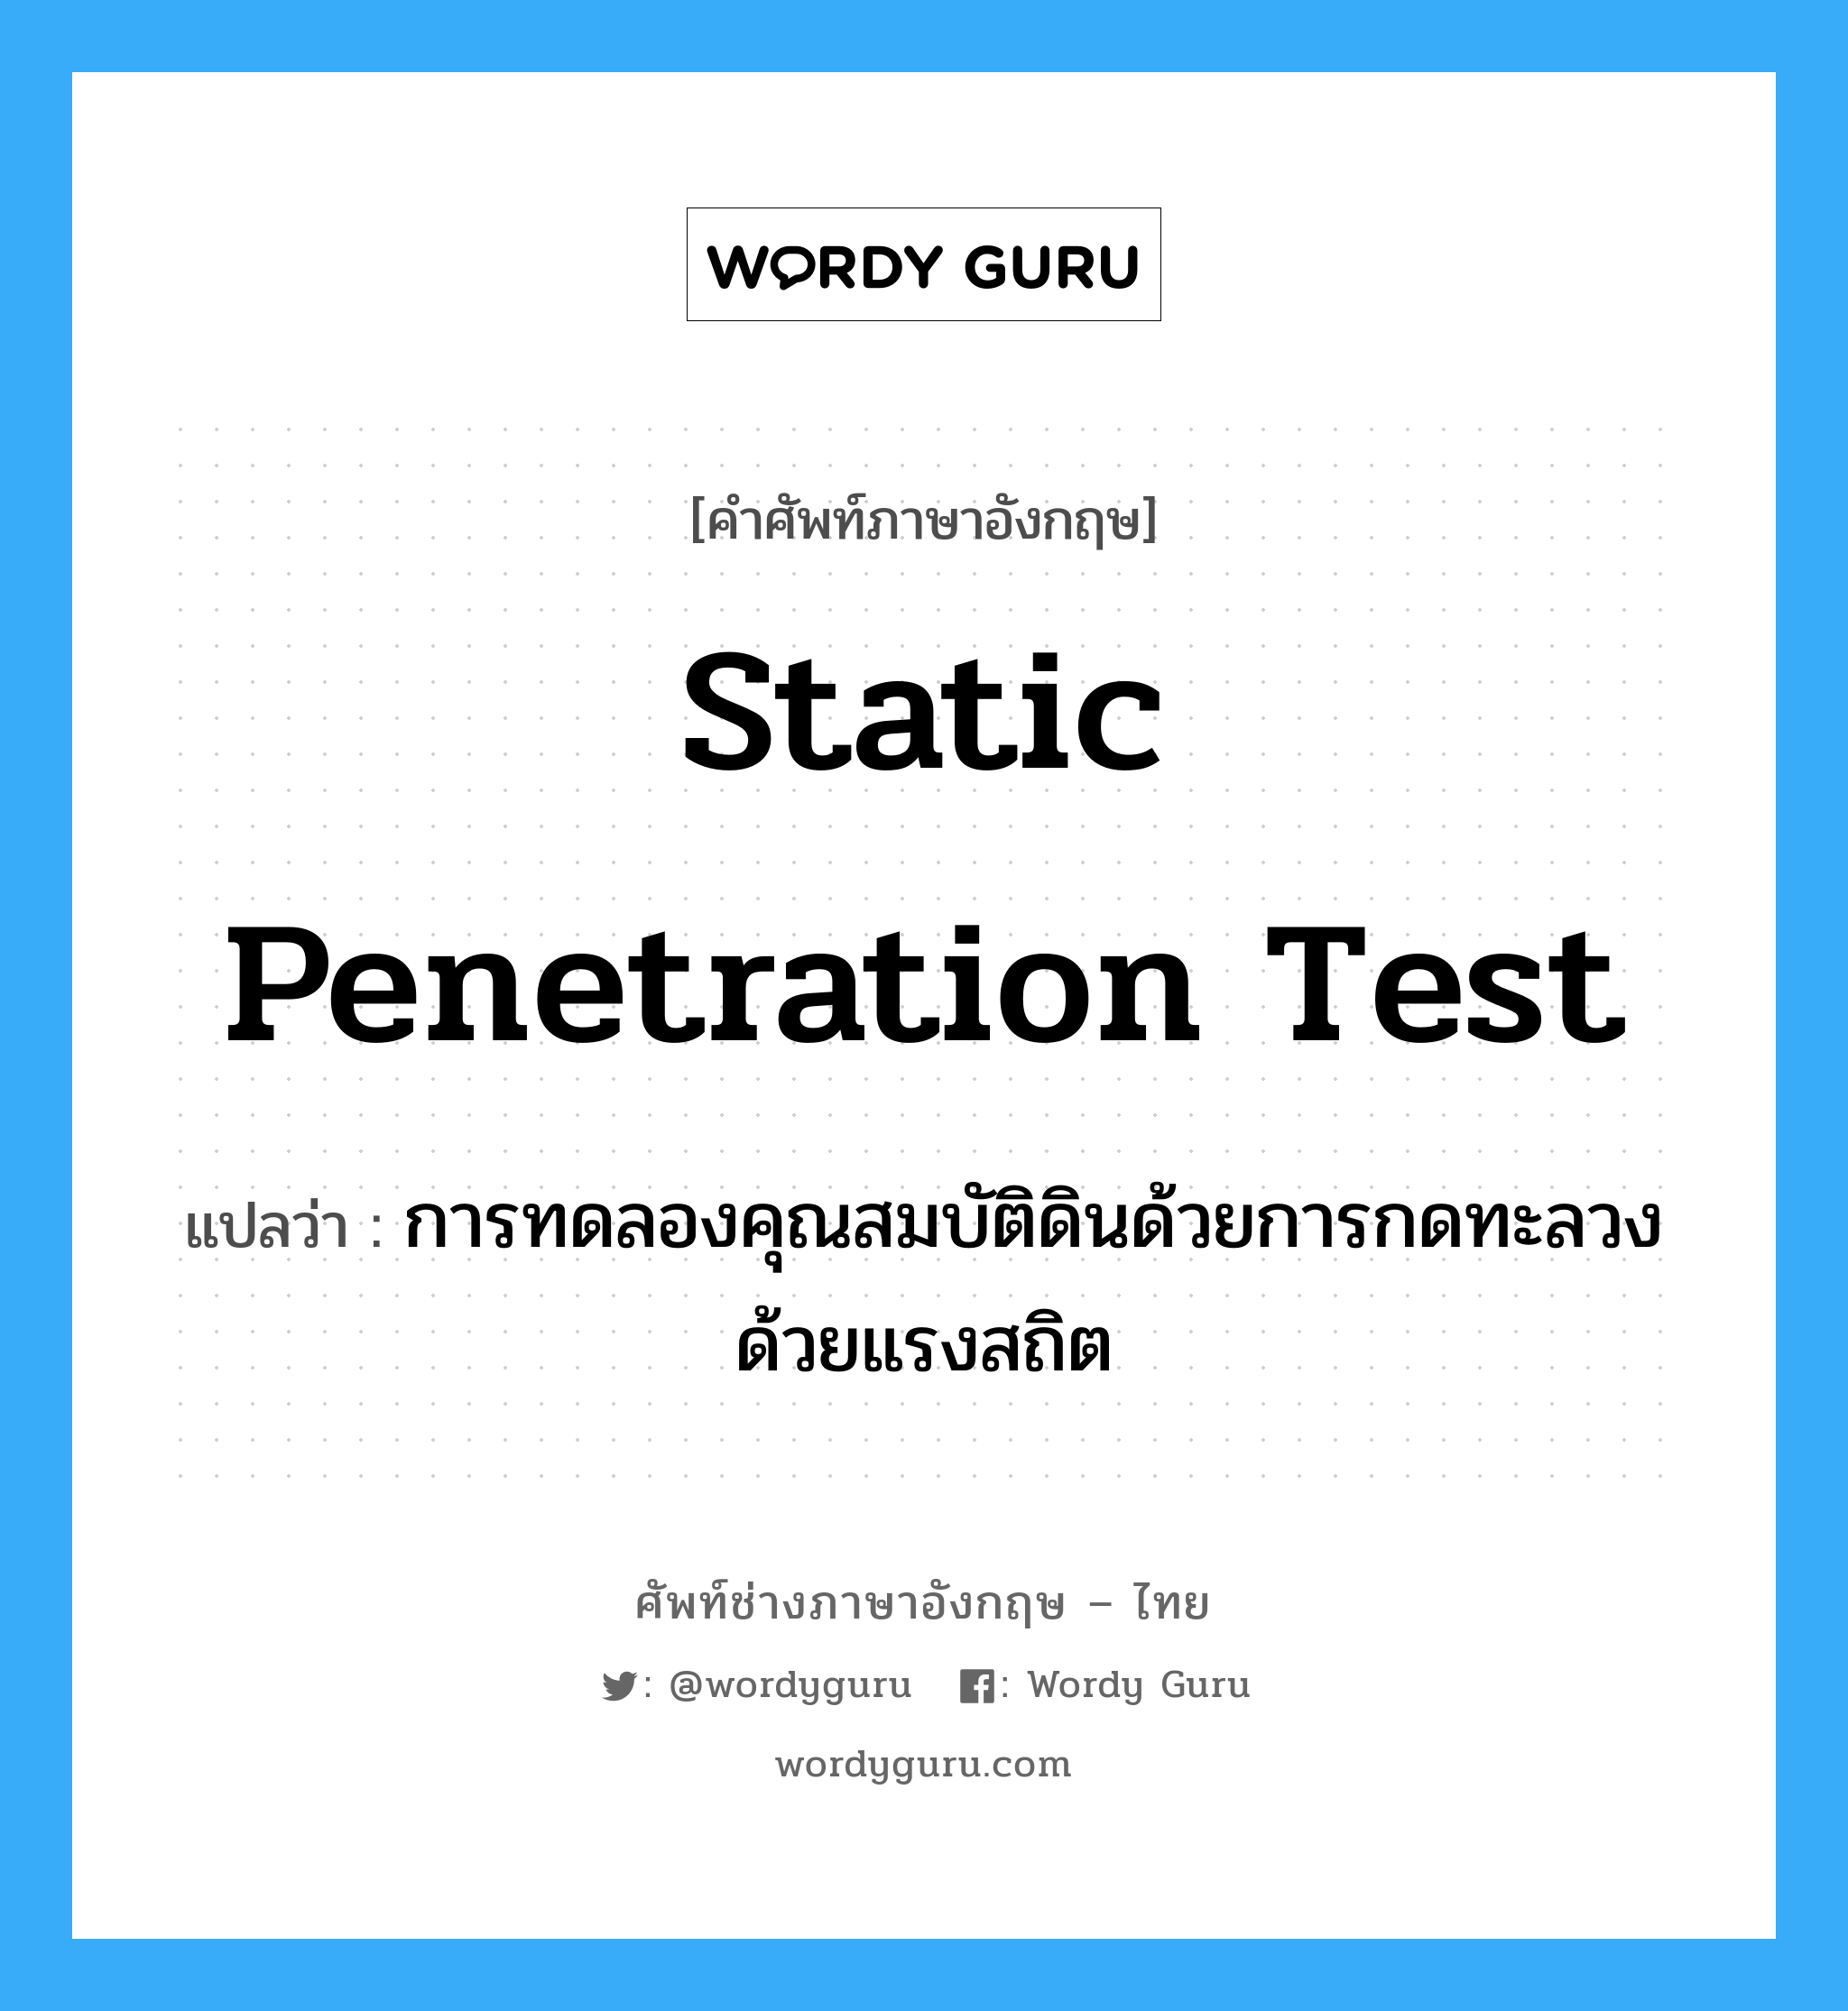 static penetration test แปลว่า?, คำศัพท์ช่างภาษาอังกฤษ - ไทย static penetration test คำศัพท์ภาษาอังกฤษ static penetration test แปลว่า การทดลองคุณสมบัติดินด้วยการกดทะลวงด้วยแรงสถิต